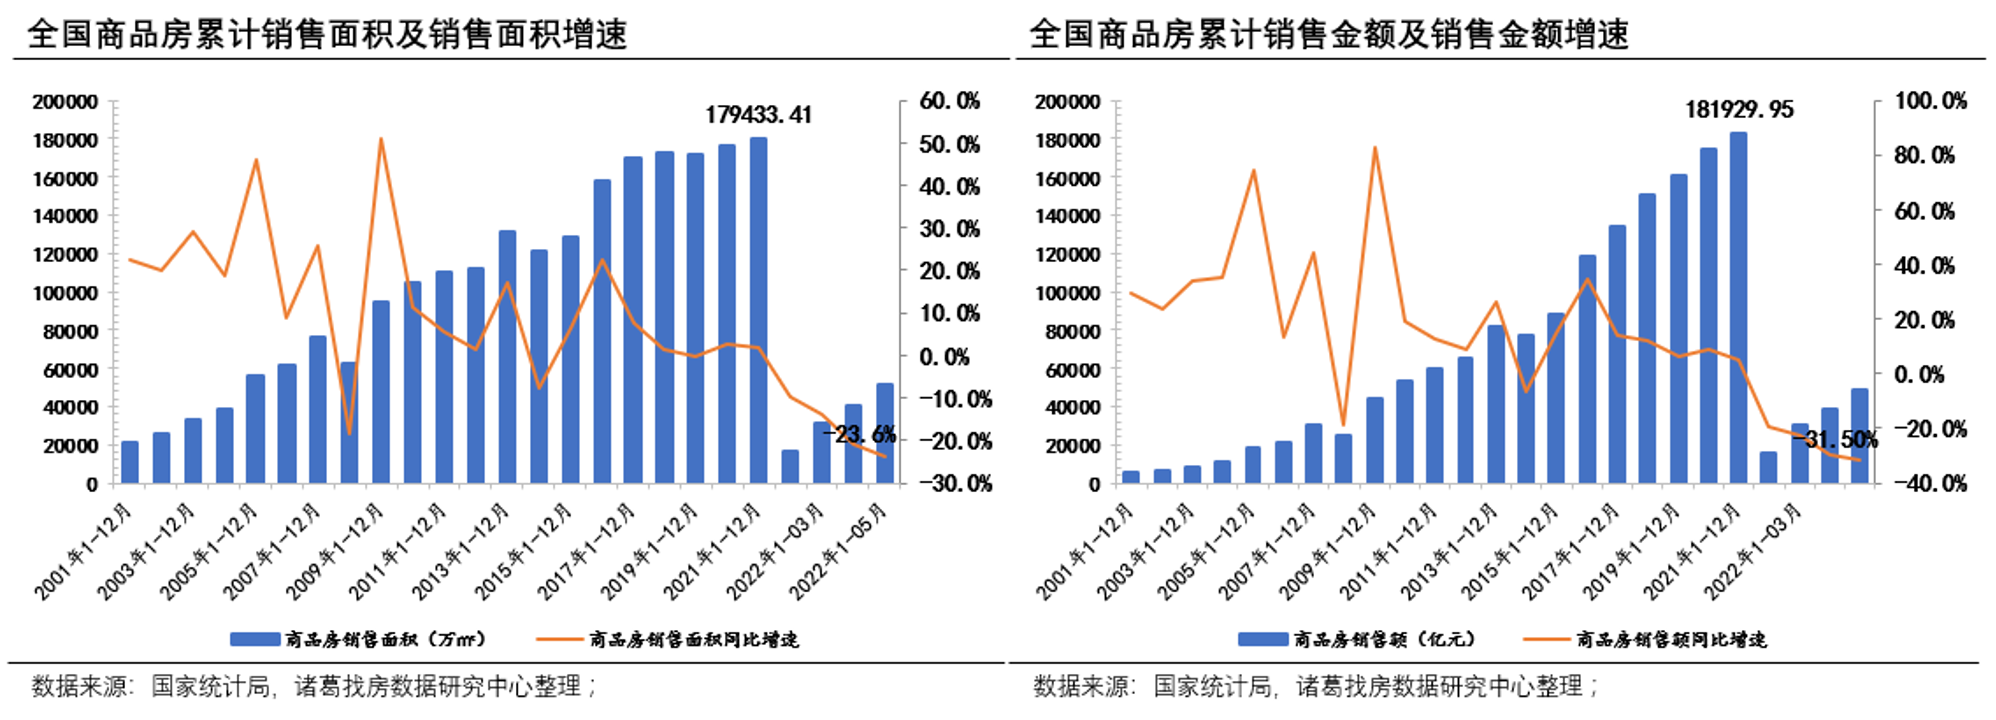 5月銷售初現觸底回升態勢 但不及去年同期水準 _中國網地産